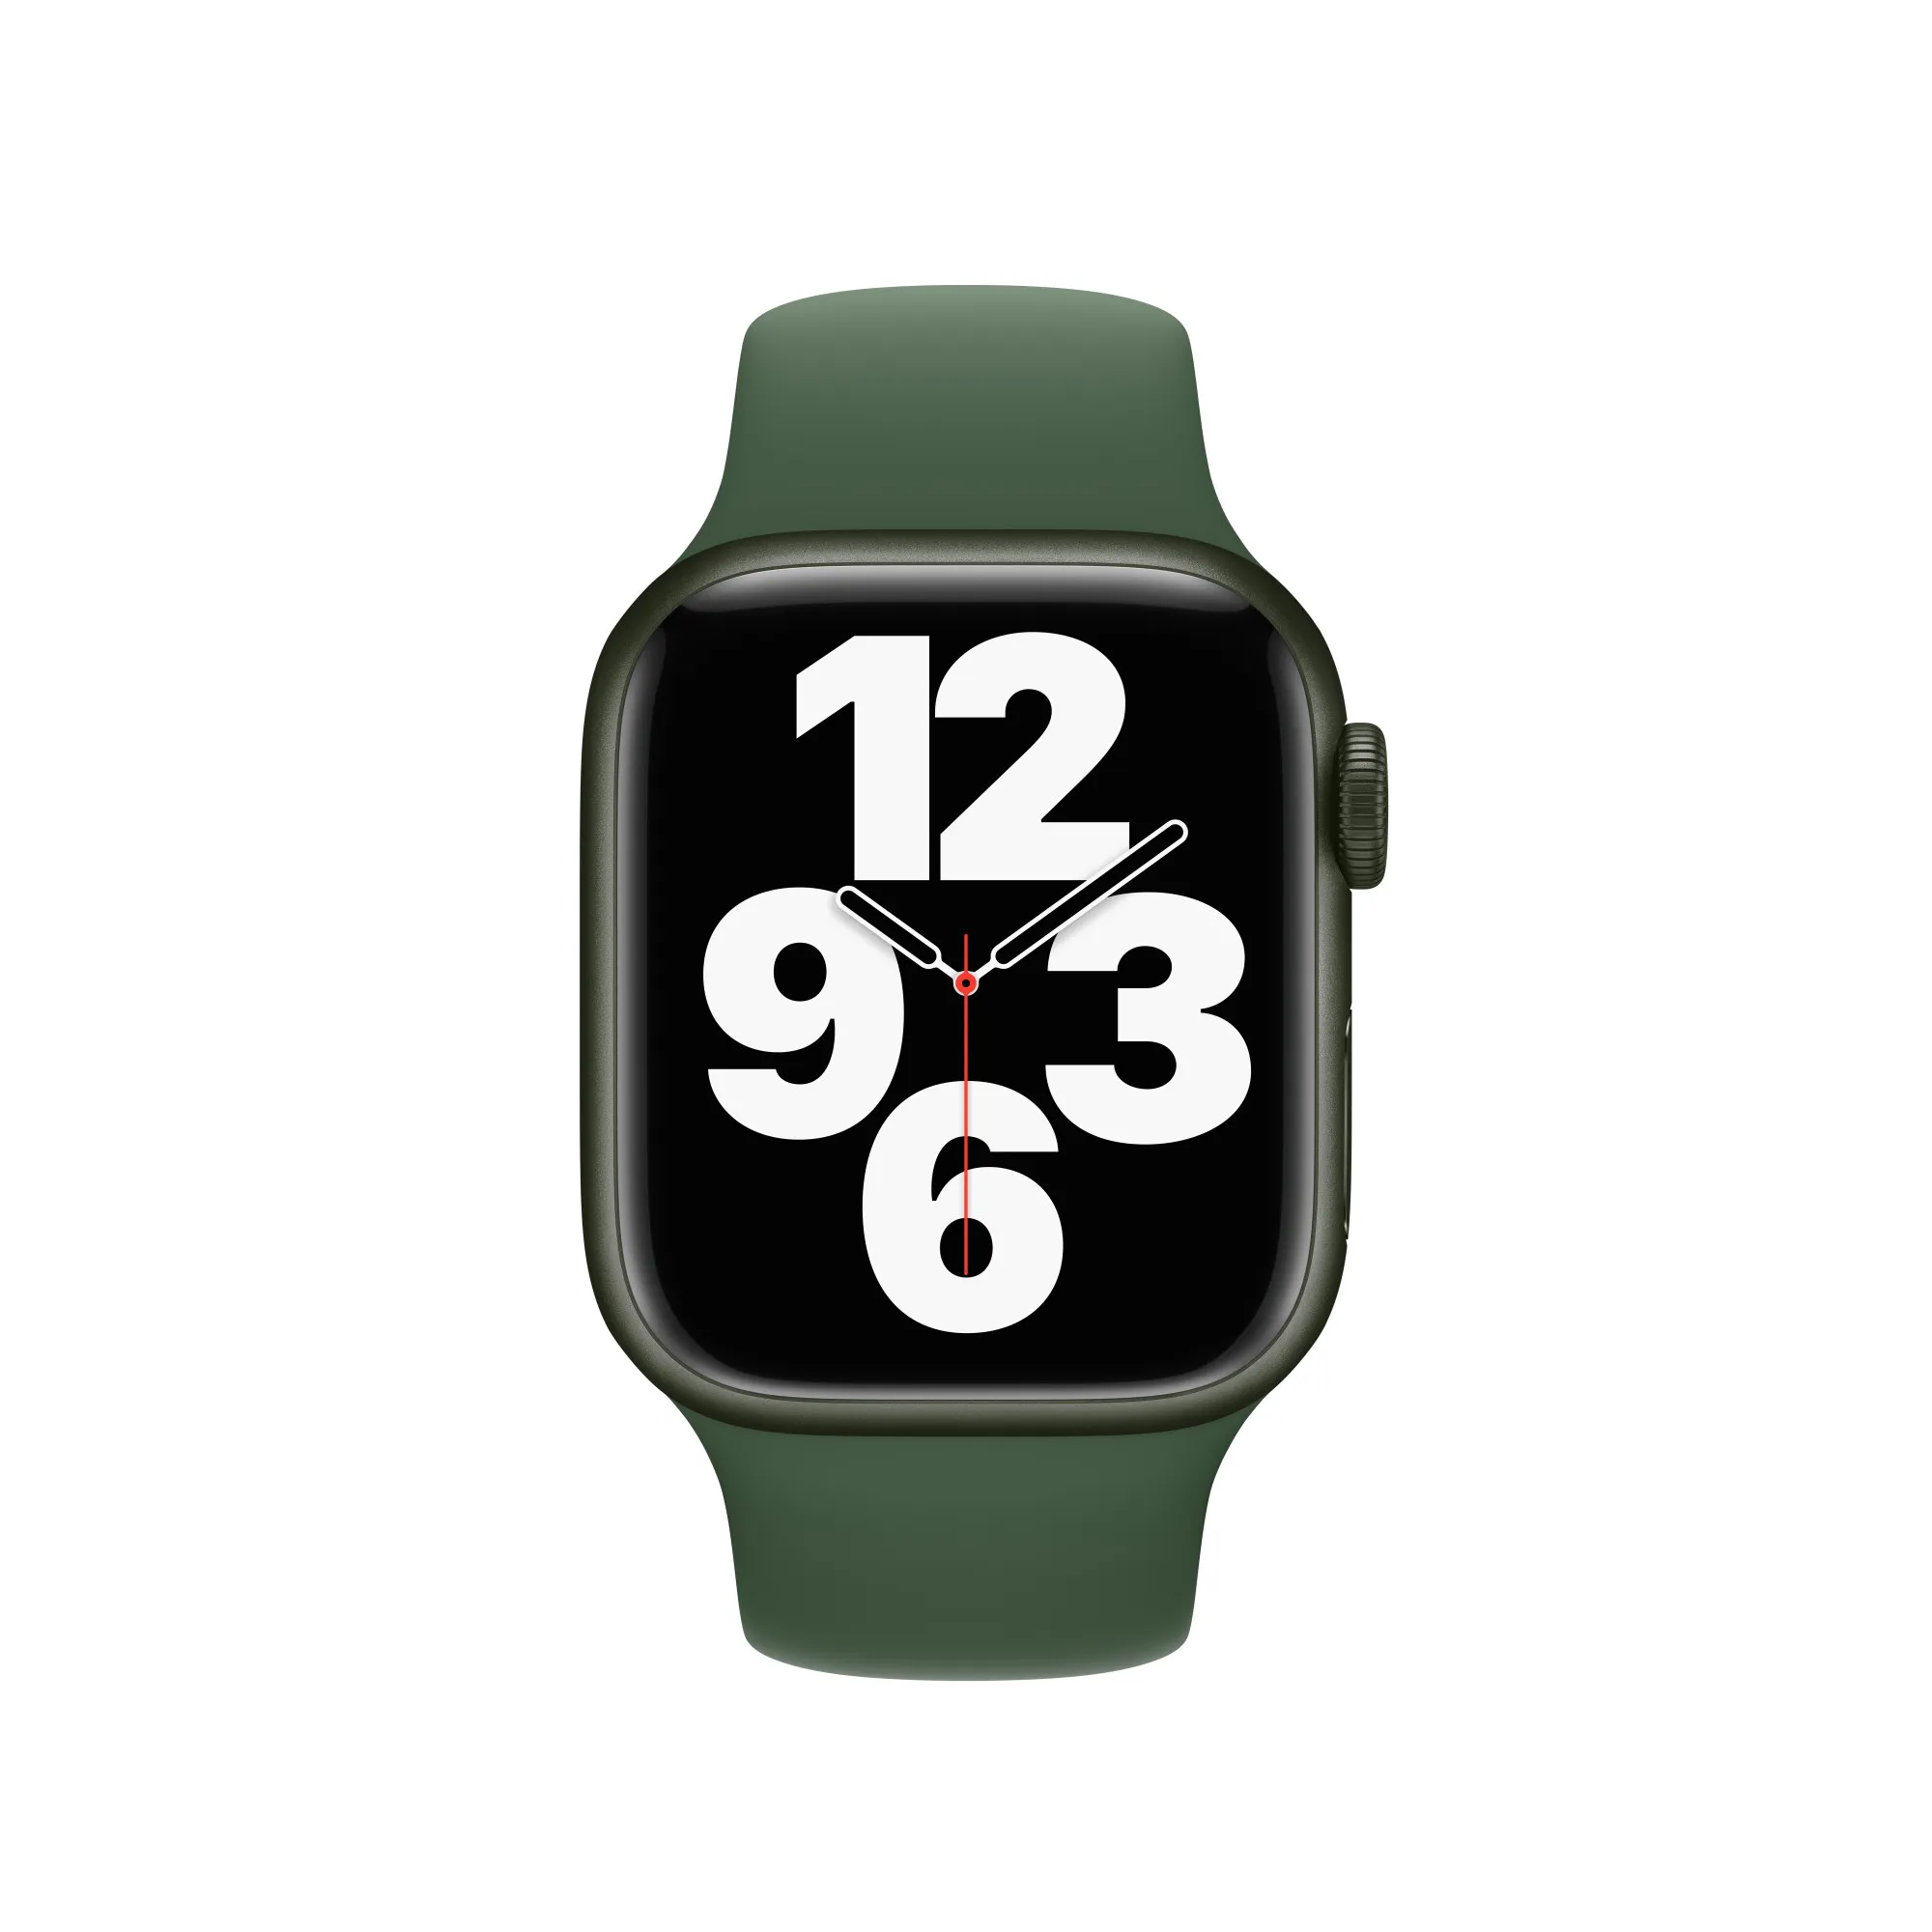 Apple Watch Series 7 41mm Green Aluminum Case with Green Sport Band Б/У (Хорошее состояние)